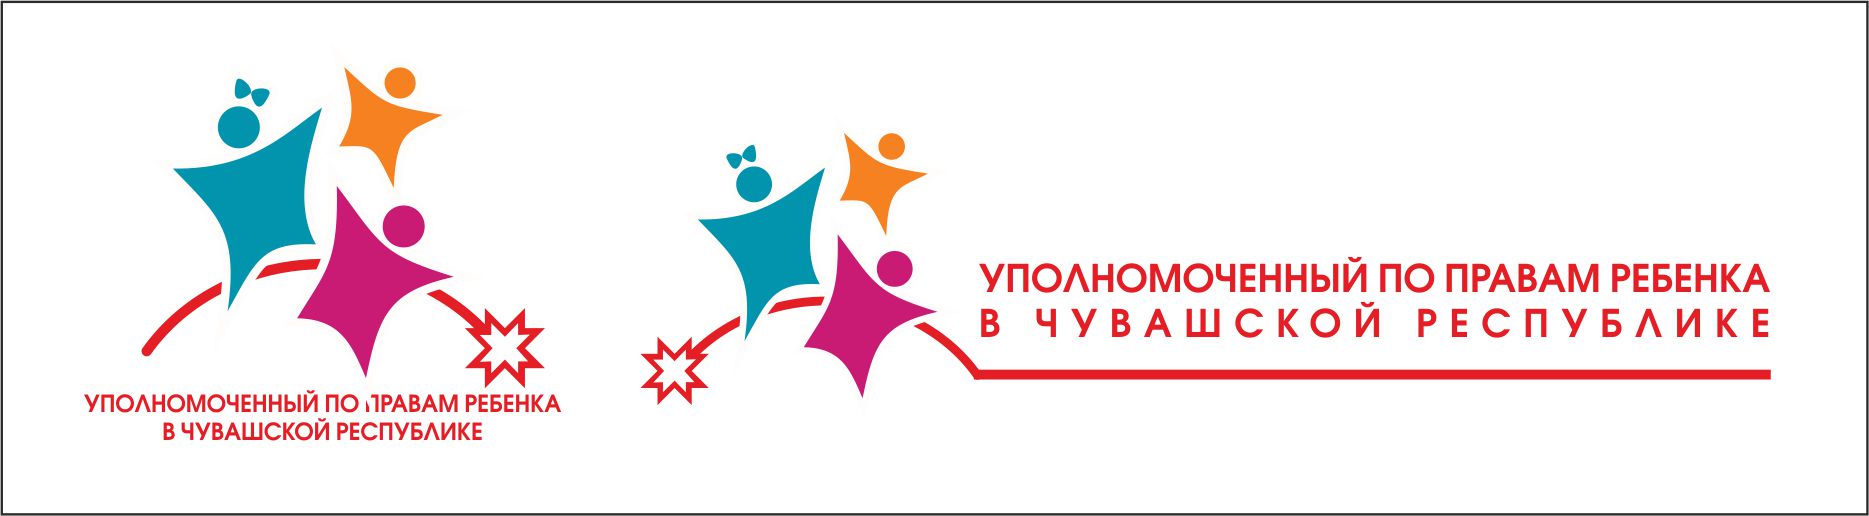 Уполномоченный по правам ребёнка в Чувашской Республике.